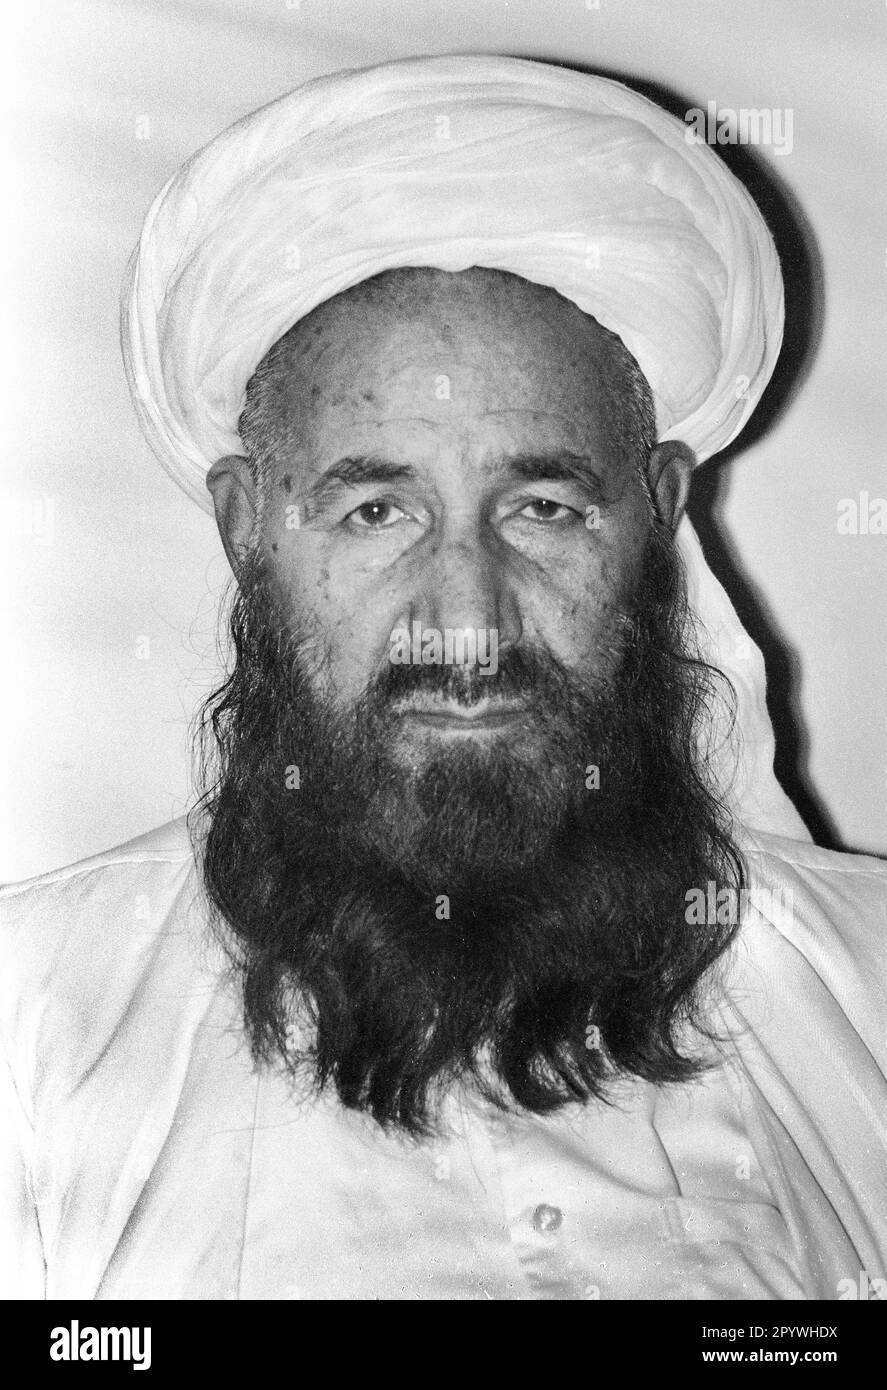 Afghanistan, 24. Oktober 1990. Archivnummer: Foto 21-49-30: Mawlawi Junis Khalis war ein afghanischer Politiker, Mudschaheddin-Führer und Gründer der islamistischen Partei Hezb-e Eslami. [Maschinelle Übersetzung] Stockfoto